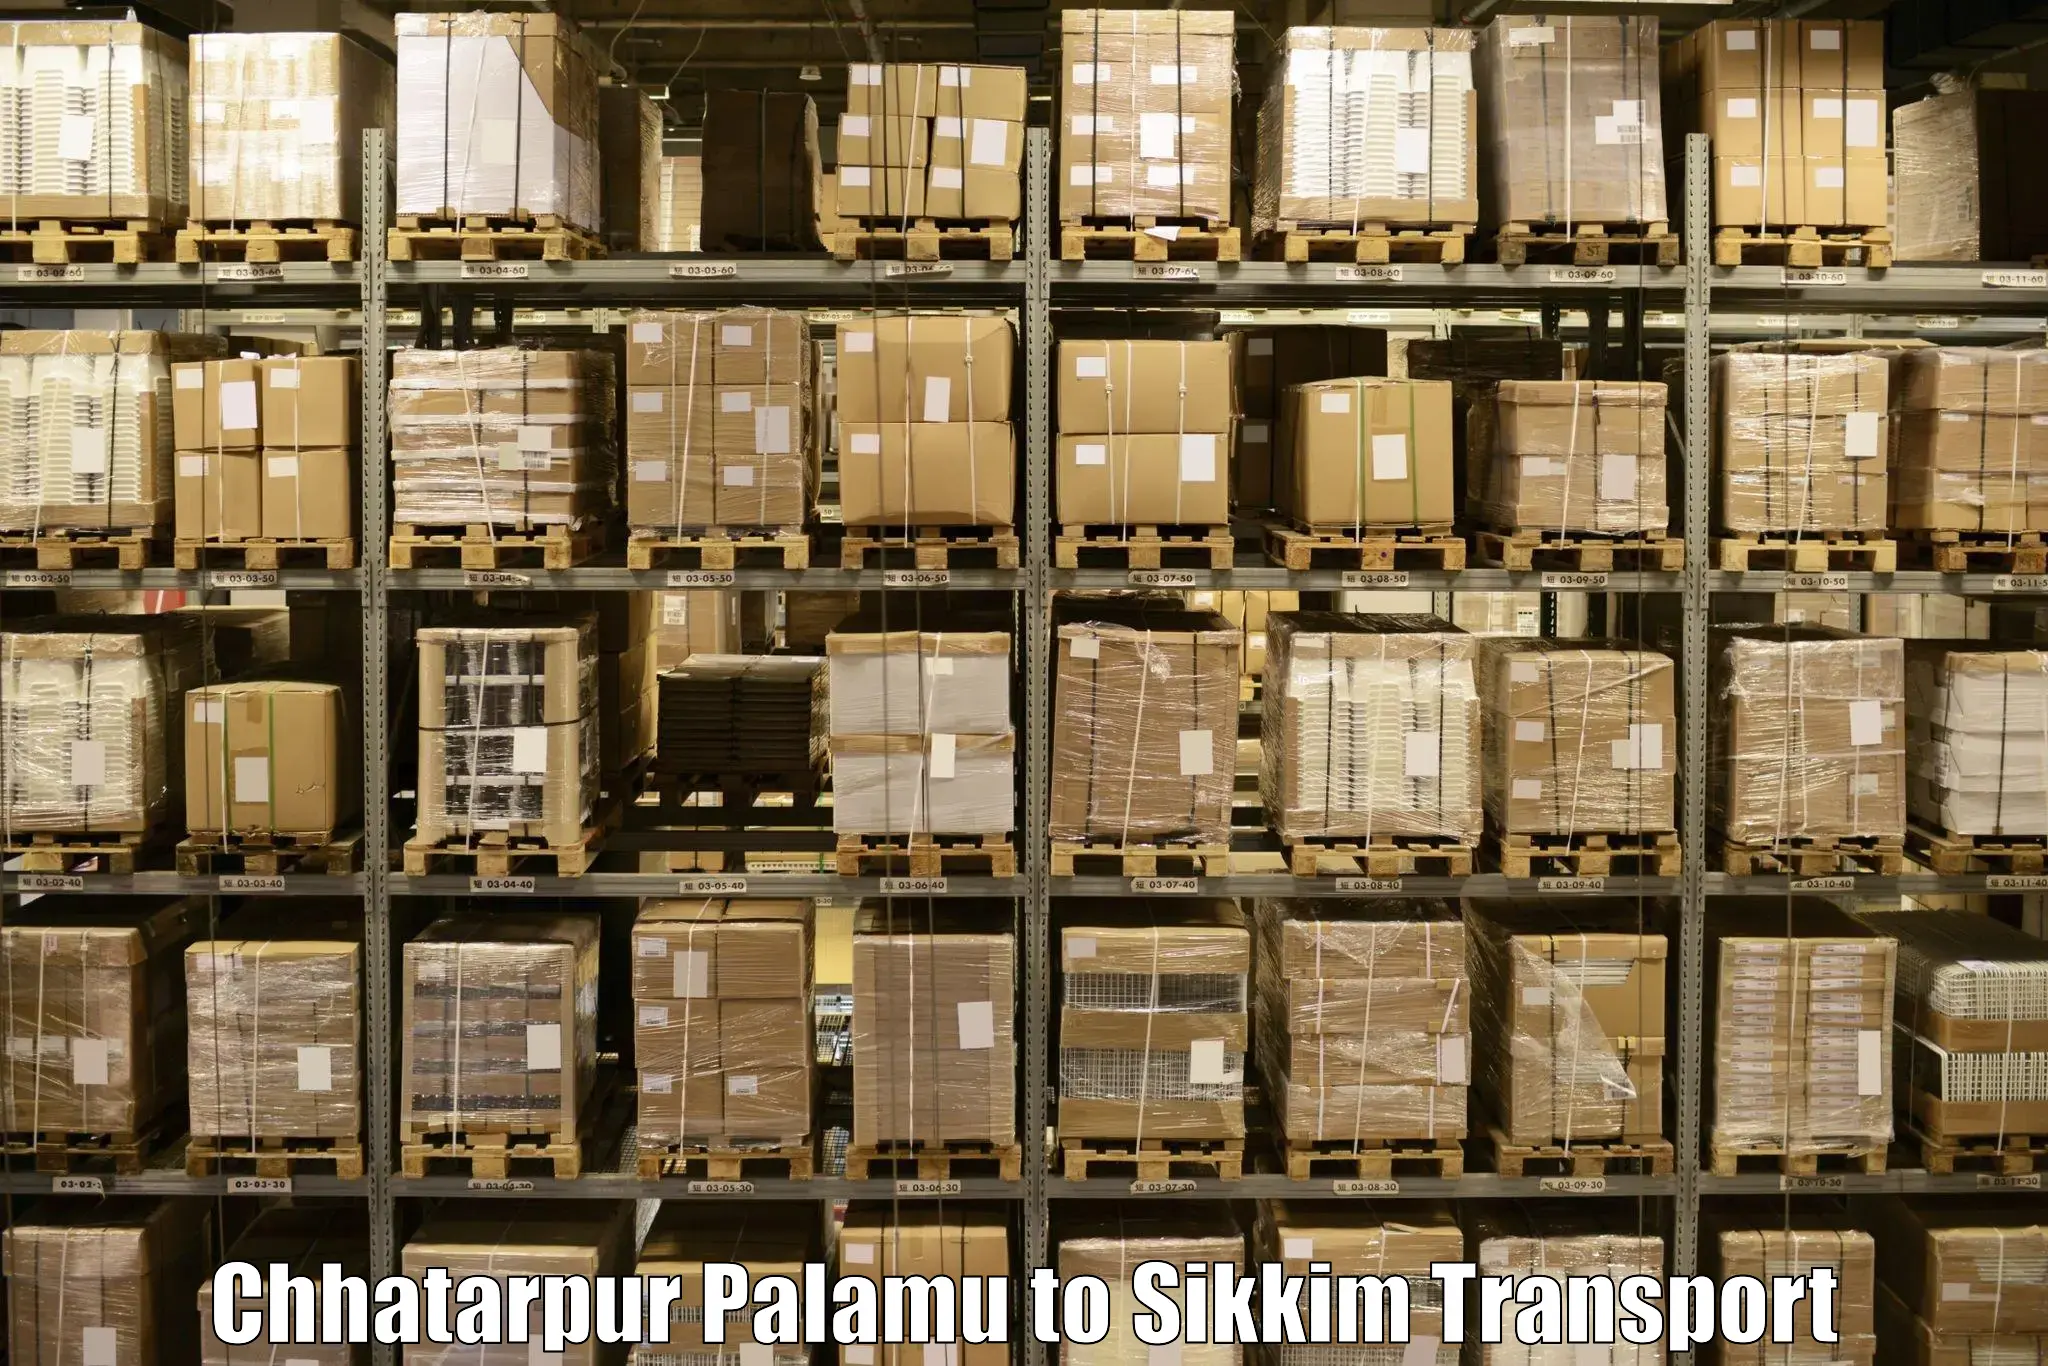 Daily parcel service transport Chhatarpur Palamu to Singtam